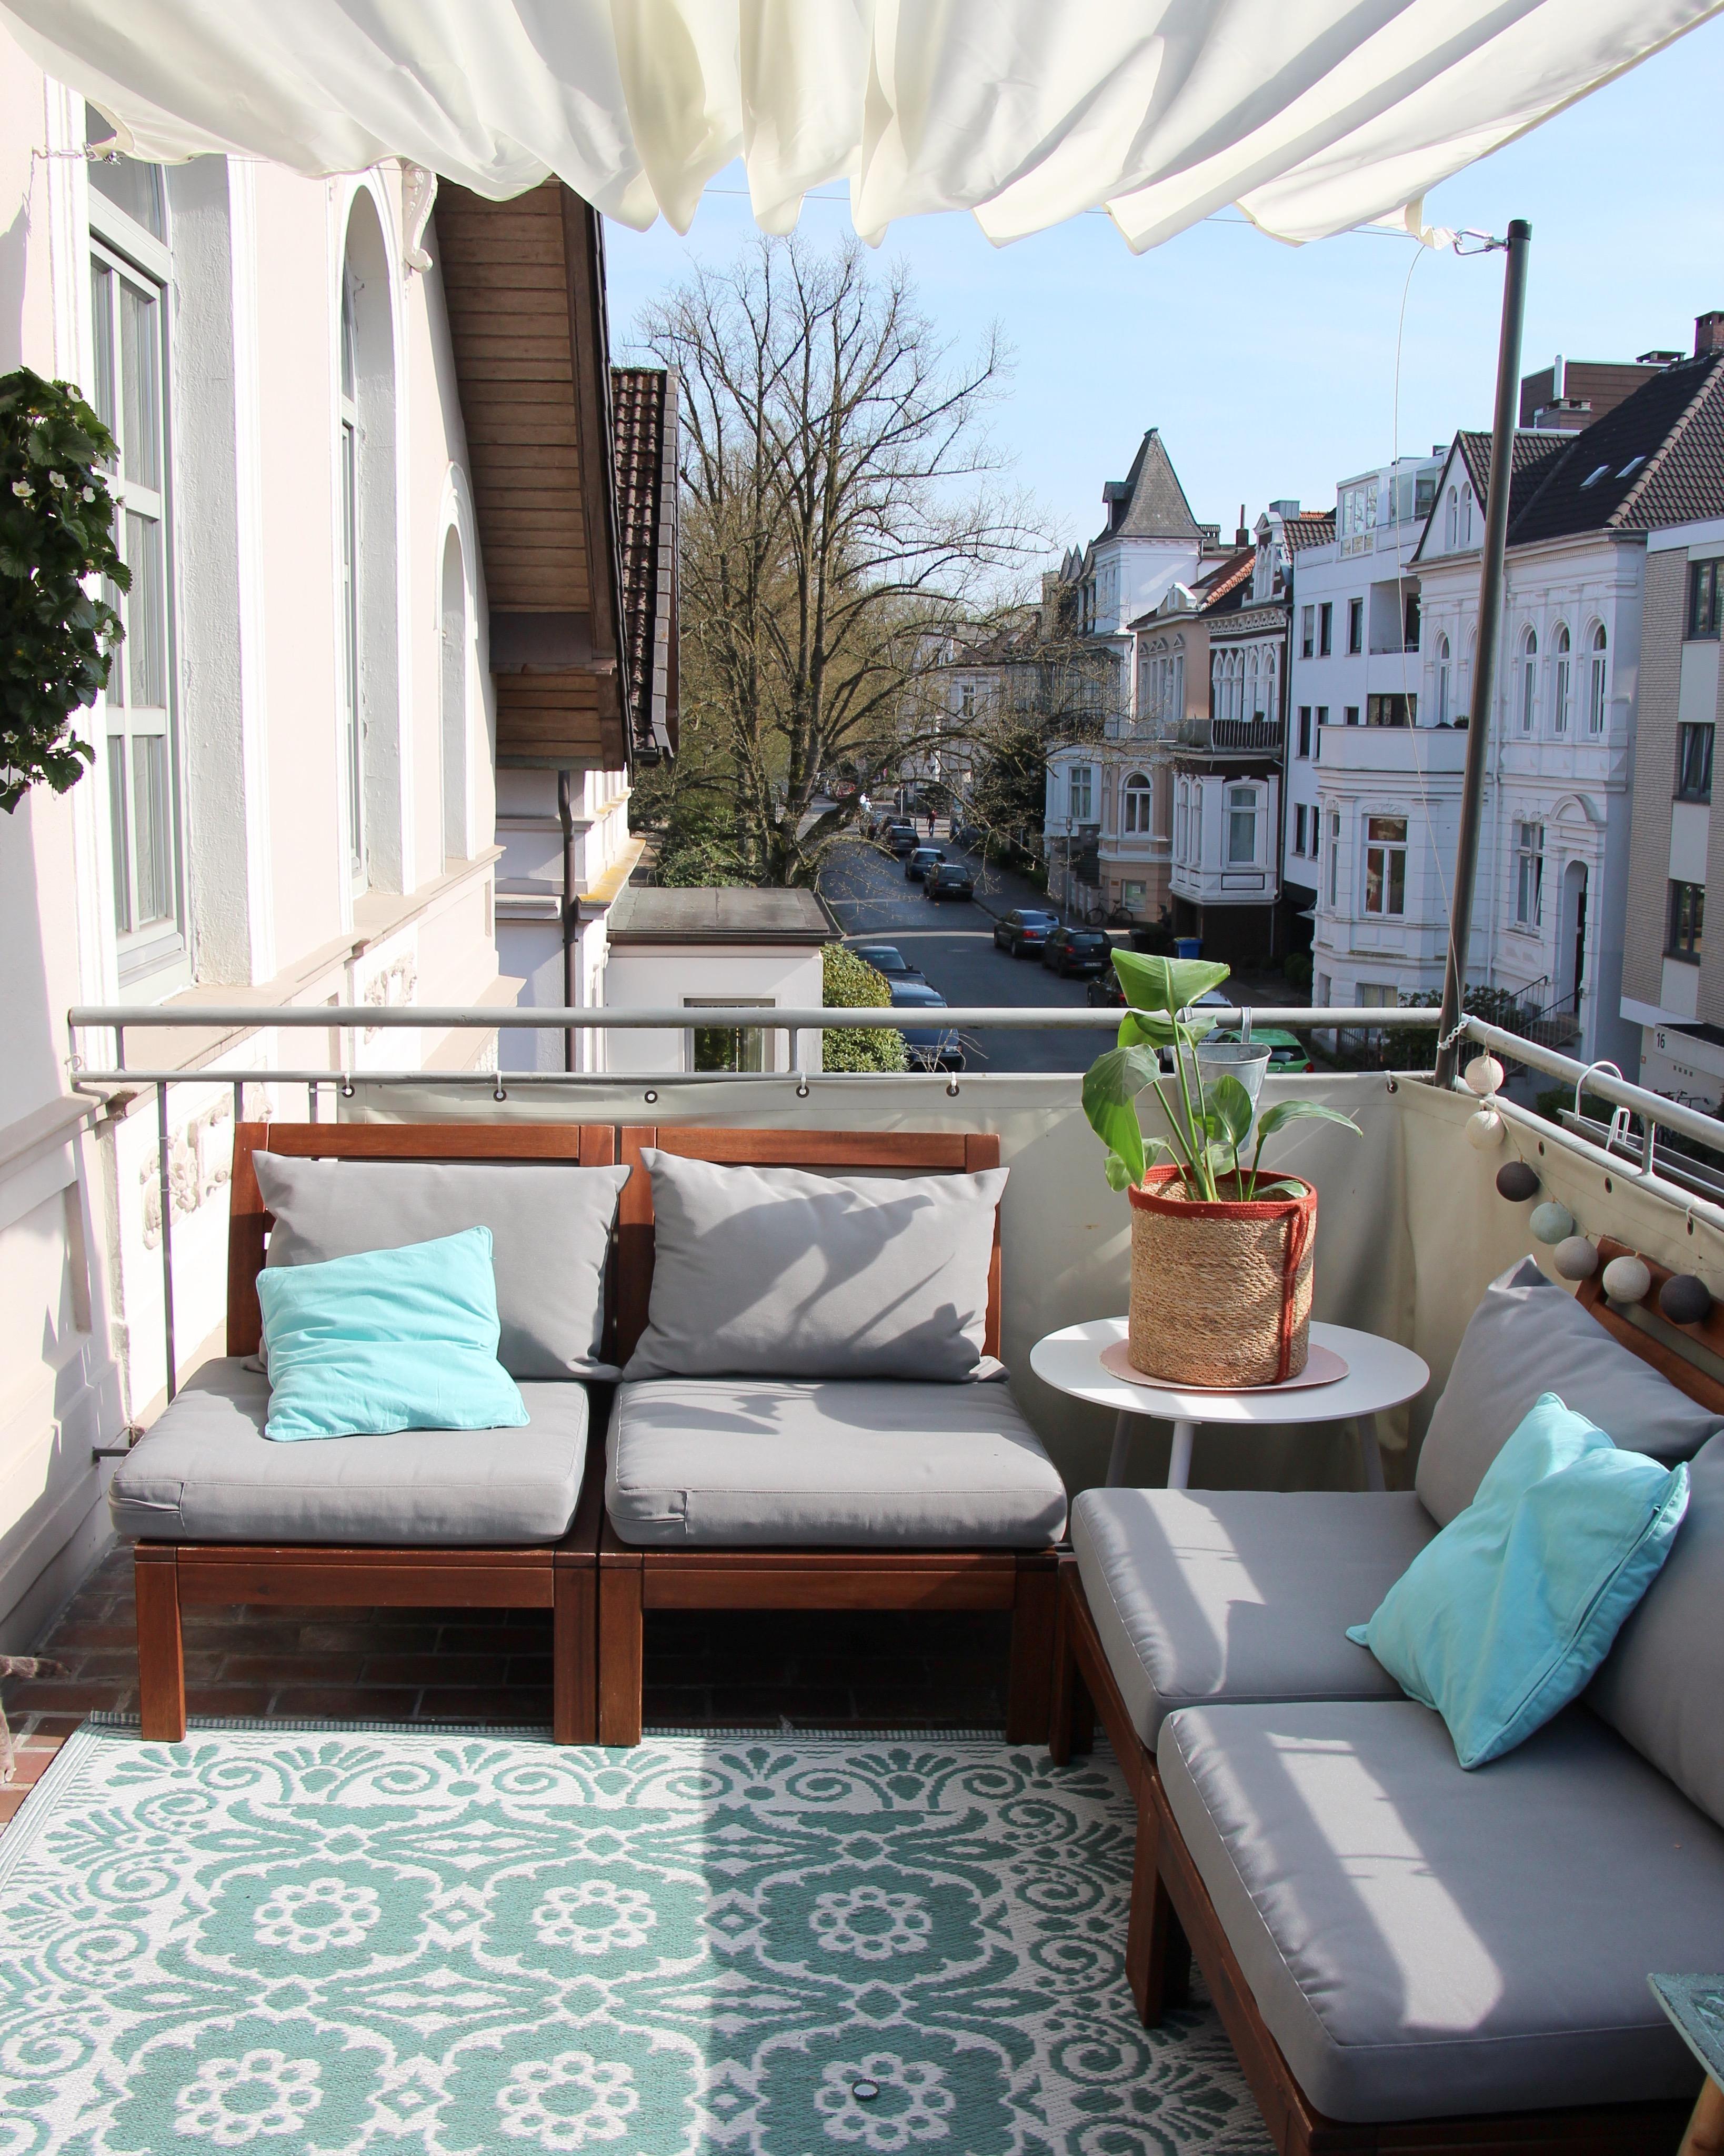 Hier haben wir das herrliche Wetter am Wochenende genossen! #Balkon #outdoor #zweitesWohnzimmer #ikea #äpplarö #boho